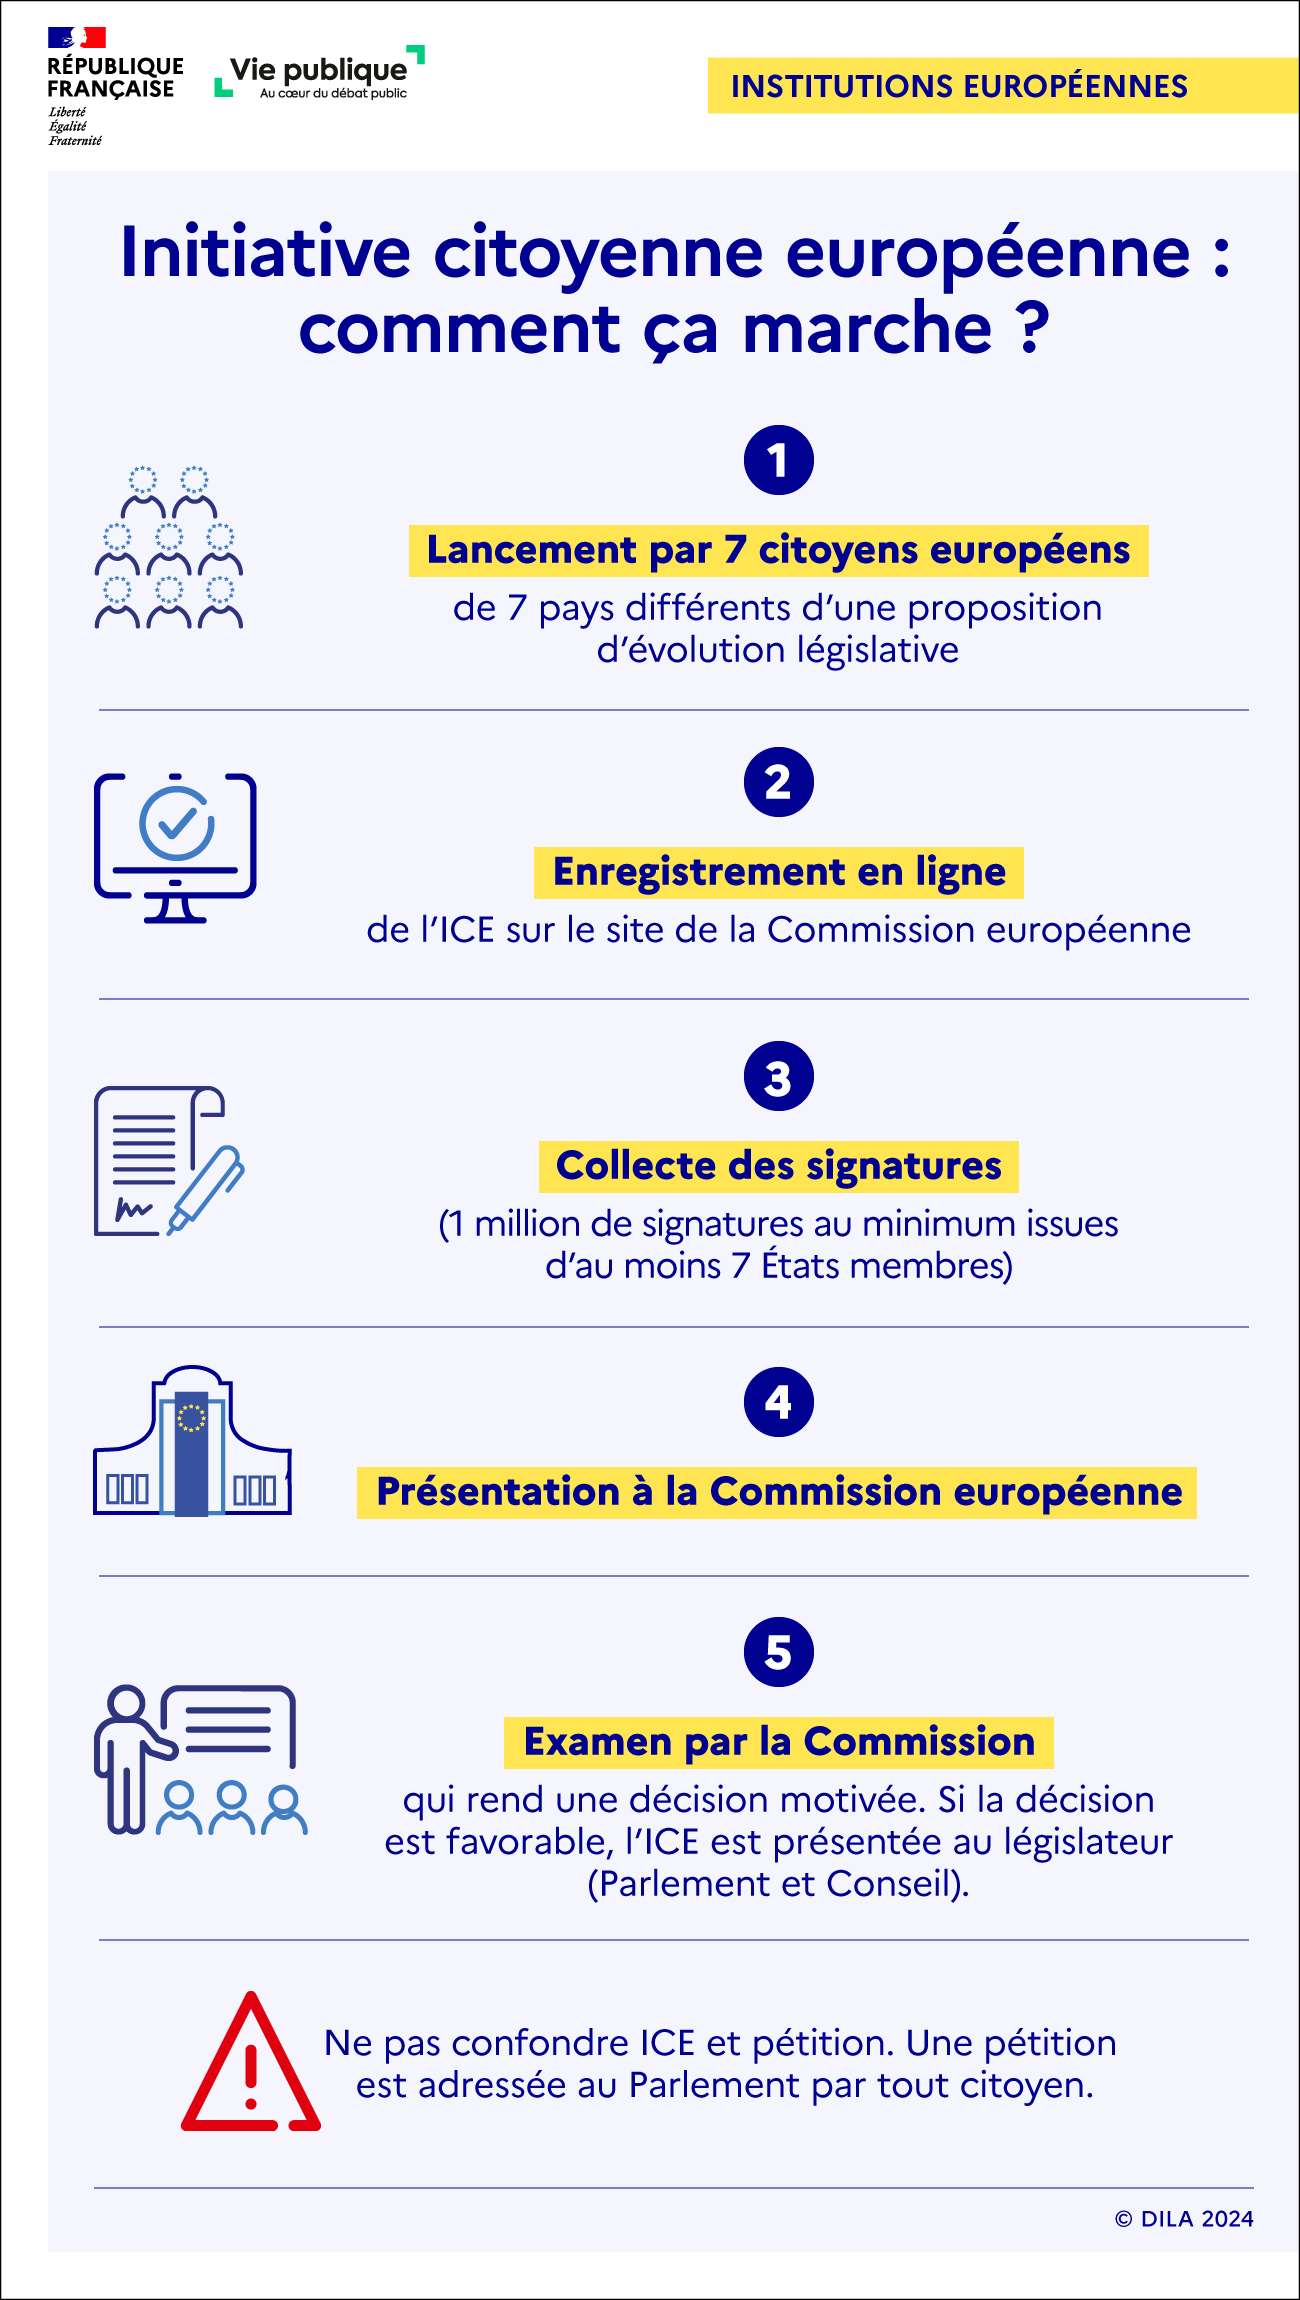 Infographie sur l'initiative citoyenne européenne (ICE) : description des différentes étapes nécessaires pour faire aboutir une ICE.